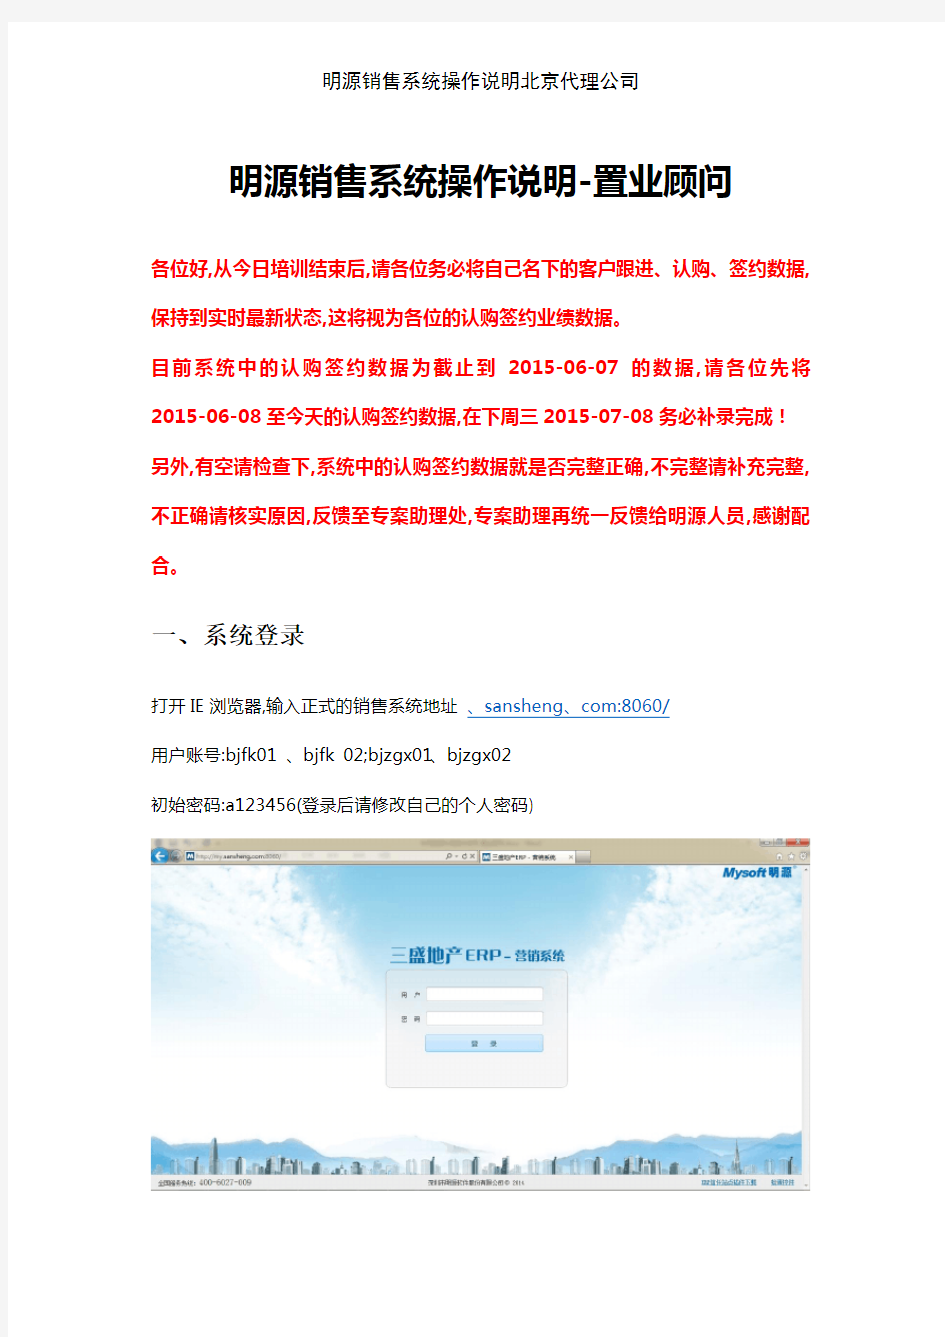 明源销售系统操作说明北京代理公司